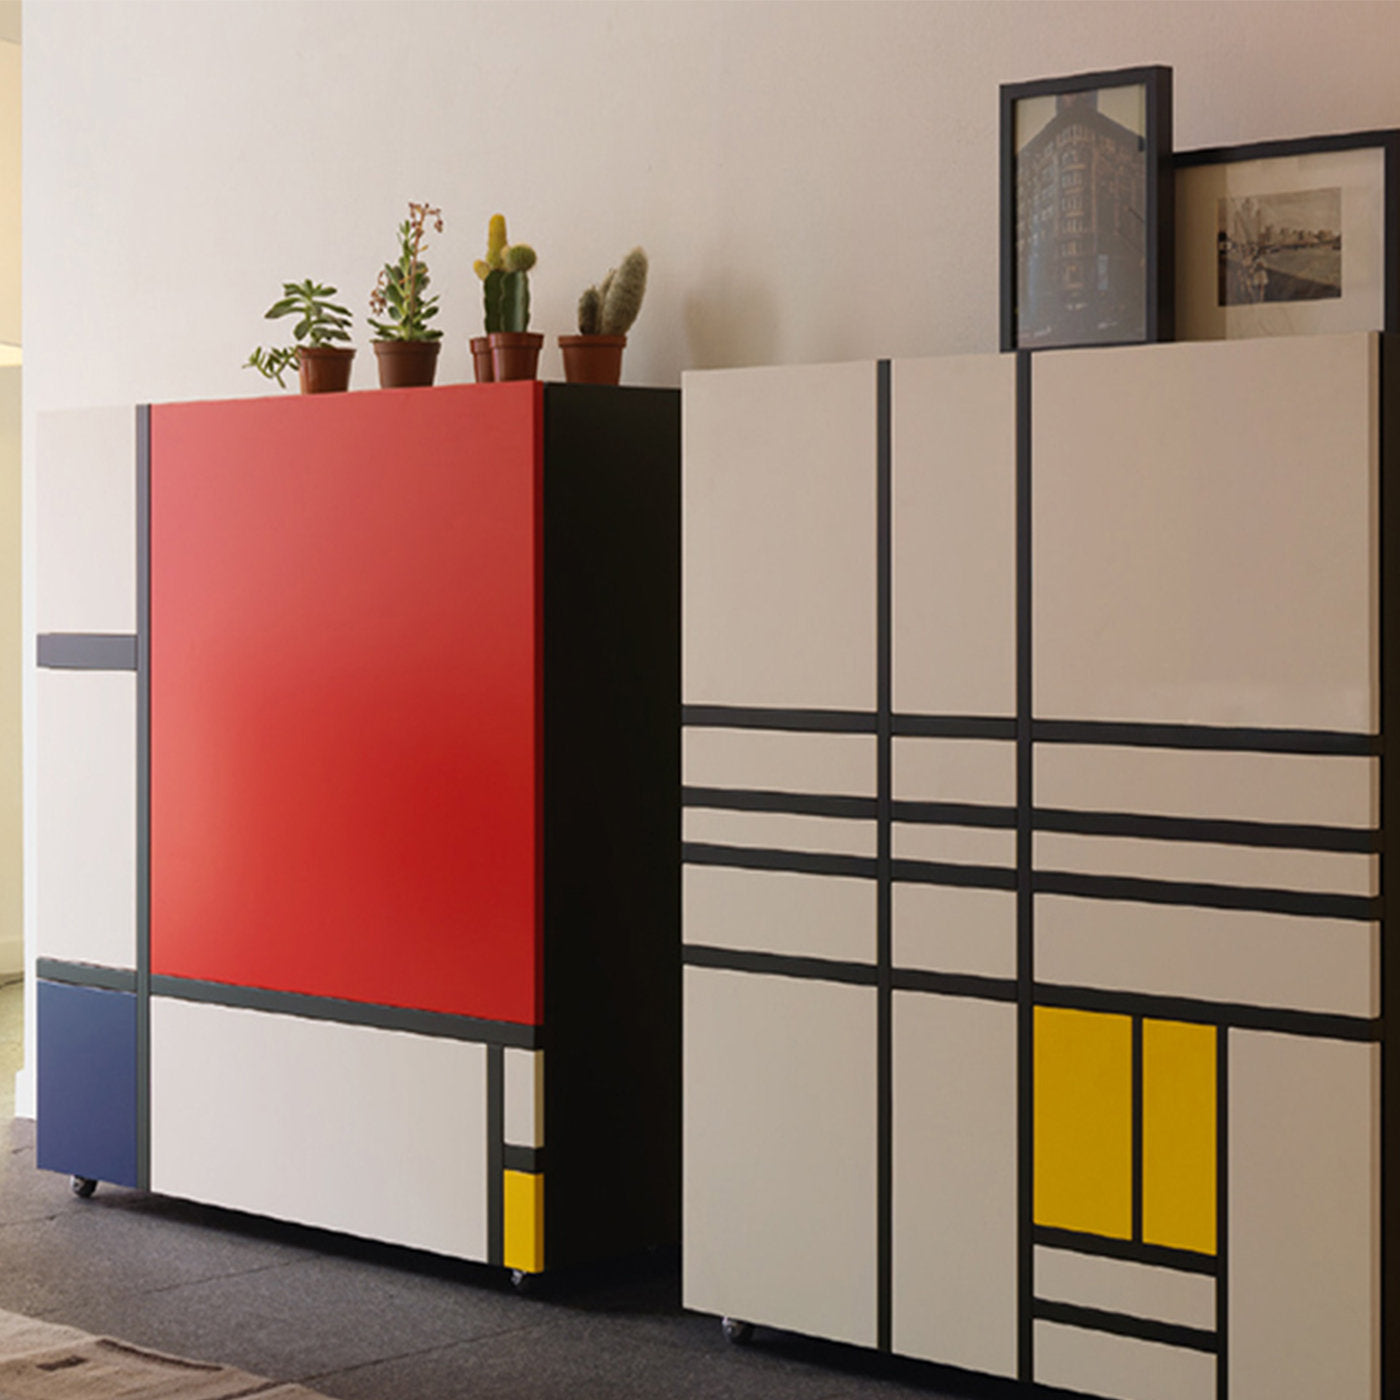 Homage to Mondrian Cabinet by Shiro Kuramata - Alternative view 1